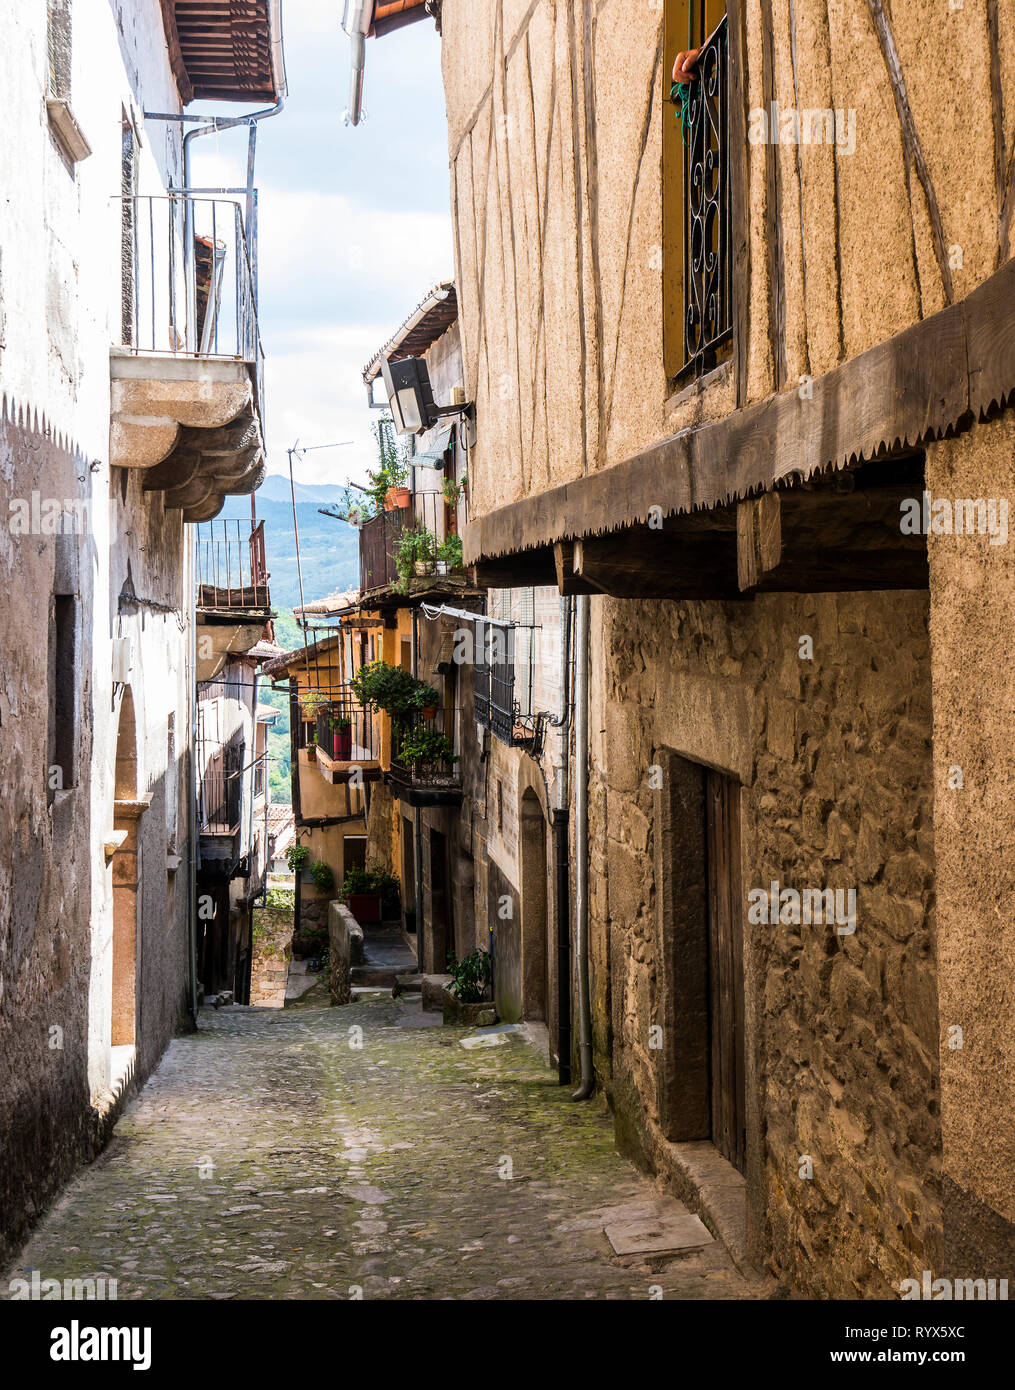 Calle típica. Miranda del Castañar. Sierra de Francia. Salamanca. Castilla León. España. Stock Photo